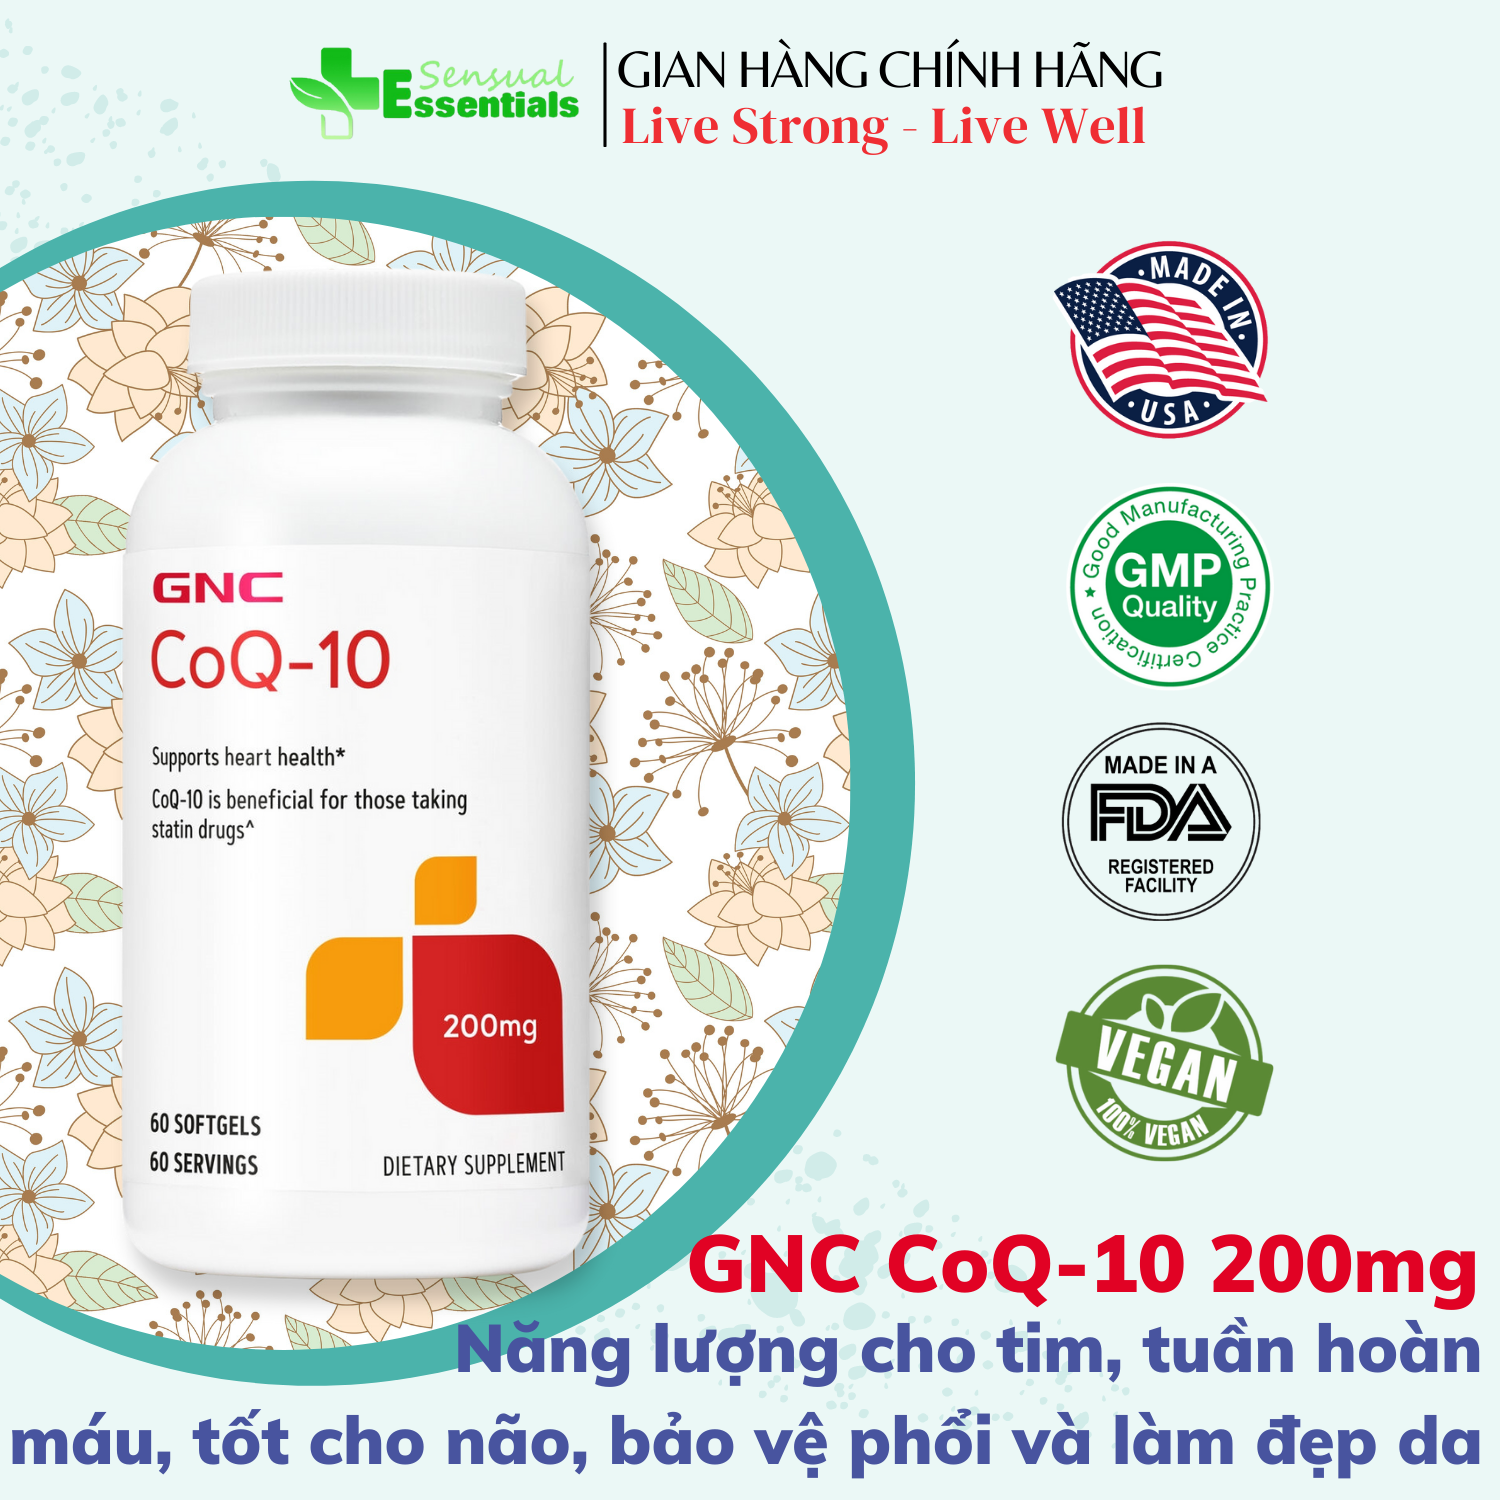 [CHÍNH HÃNG] Viên uống bổ sung CoQ-10 GNC hỗ trợ năng lượng tim, tuần hoàn máu, tốt cho não, phổi, chống lão hóa và làm đẹp da thumbnail